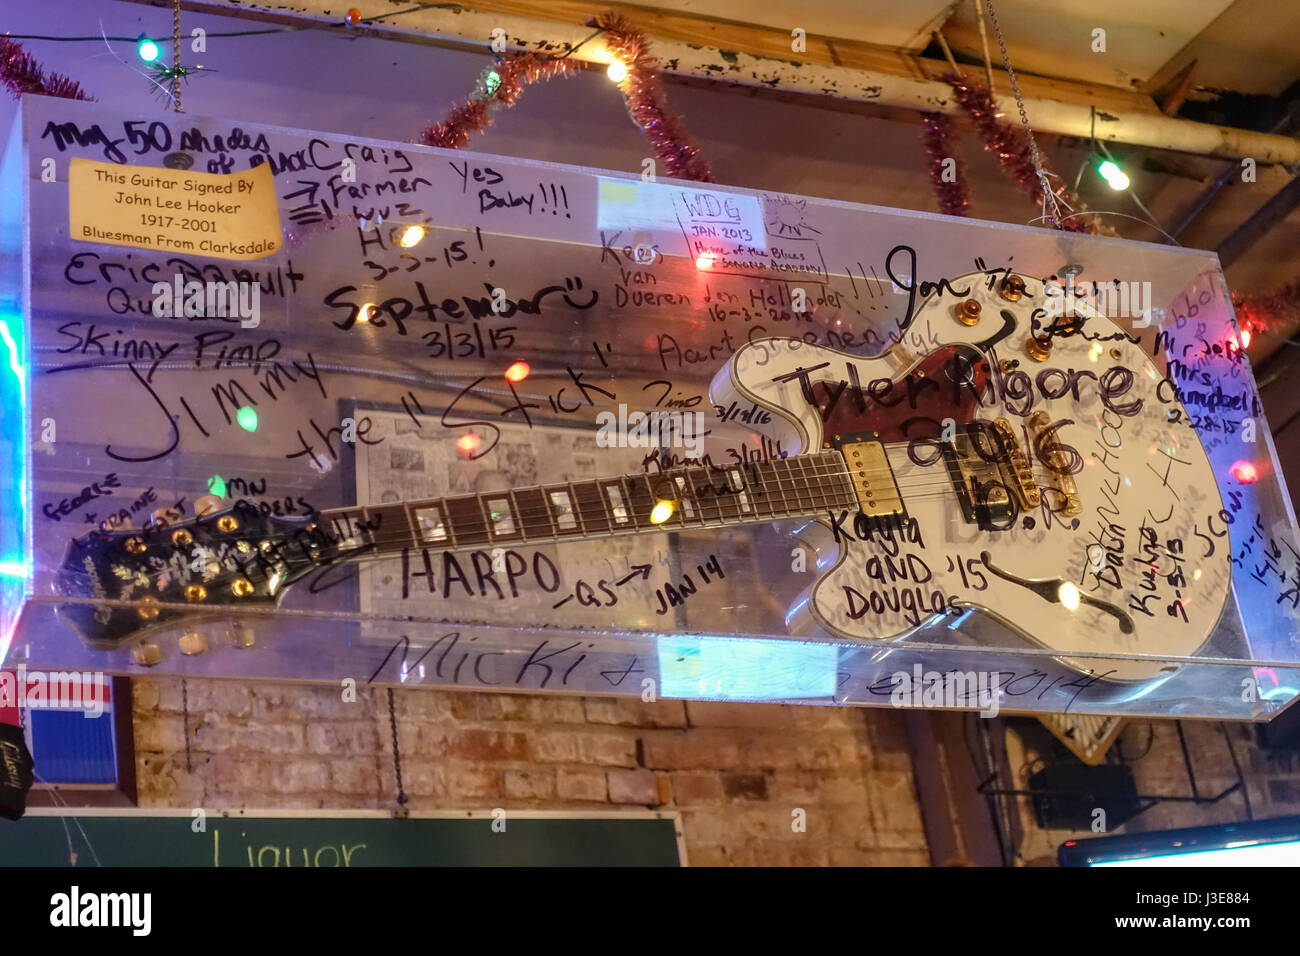 Guitare signé par John Lee Hooker à Morgan Freeman's Ground Zero Blues Club à Clarksdale, Mississippi Banque D'Images